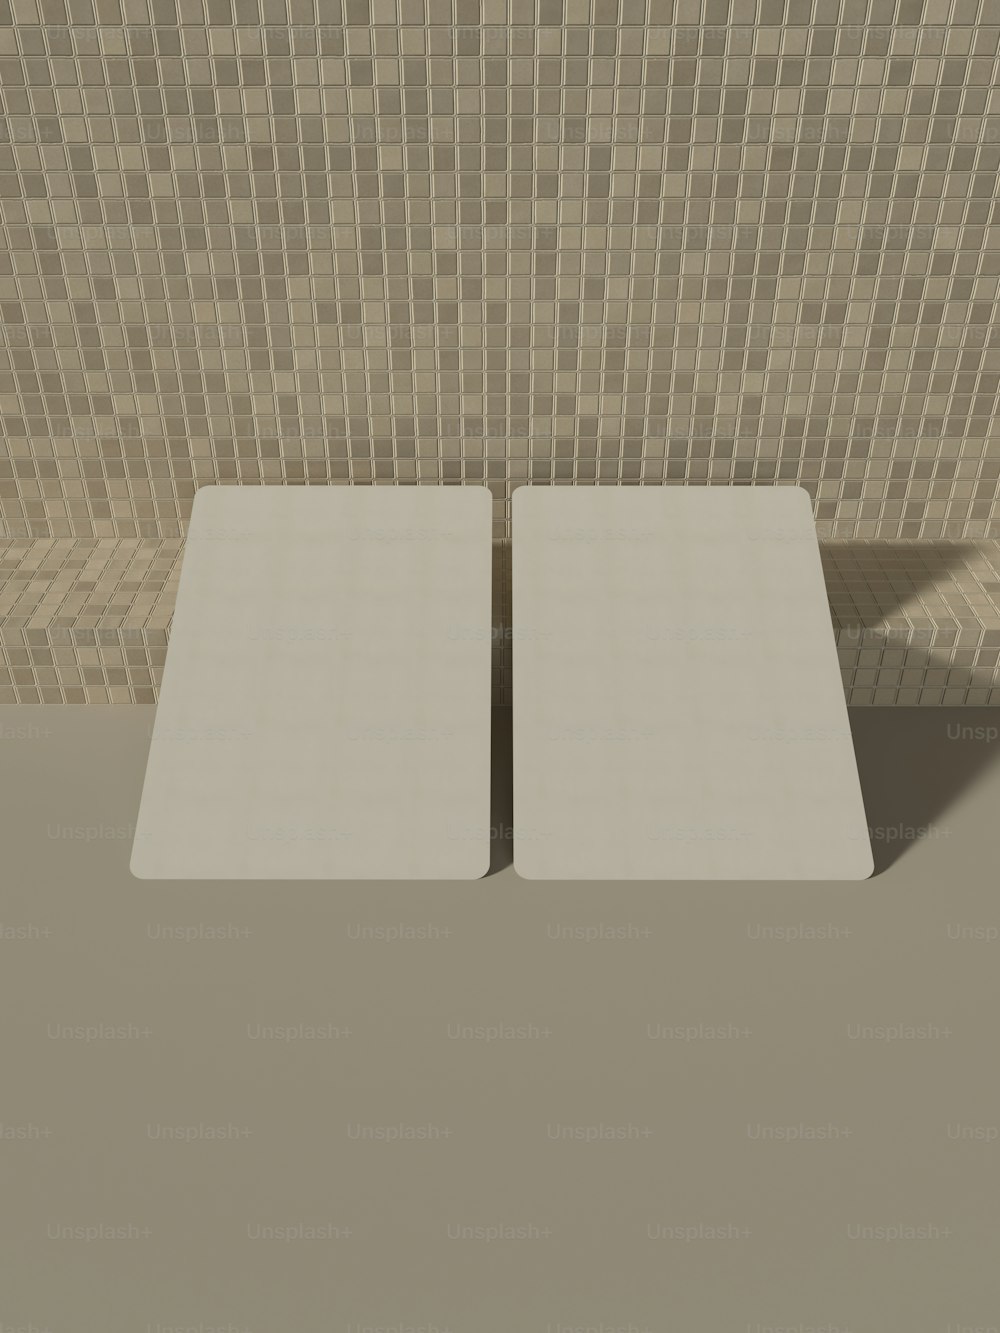 um par de mesas quadradas brancas na frente de uma parede de azulejos